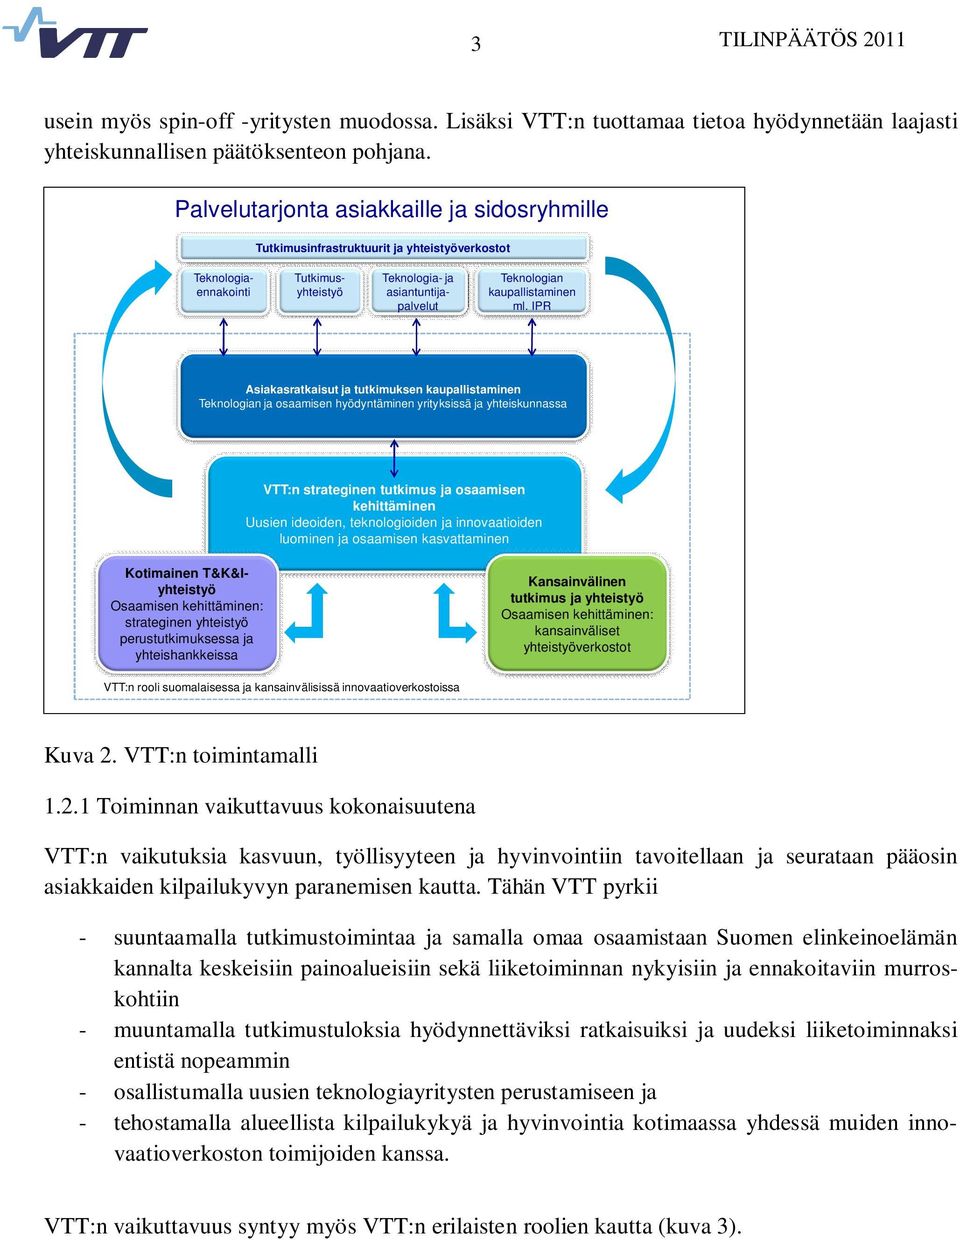 IPR Asiakasratkaisut ja tutkimuksen kaupallistaminen Teknologian ja osaamisen hyödyntäminen yrityksissä ja yhteiskunnassa VTT:n strateginen tutkimus ja osaamisen kehittäminen VTT Uusien ideoiden,